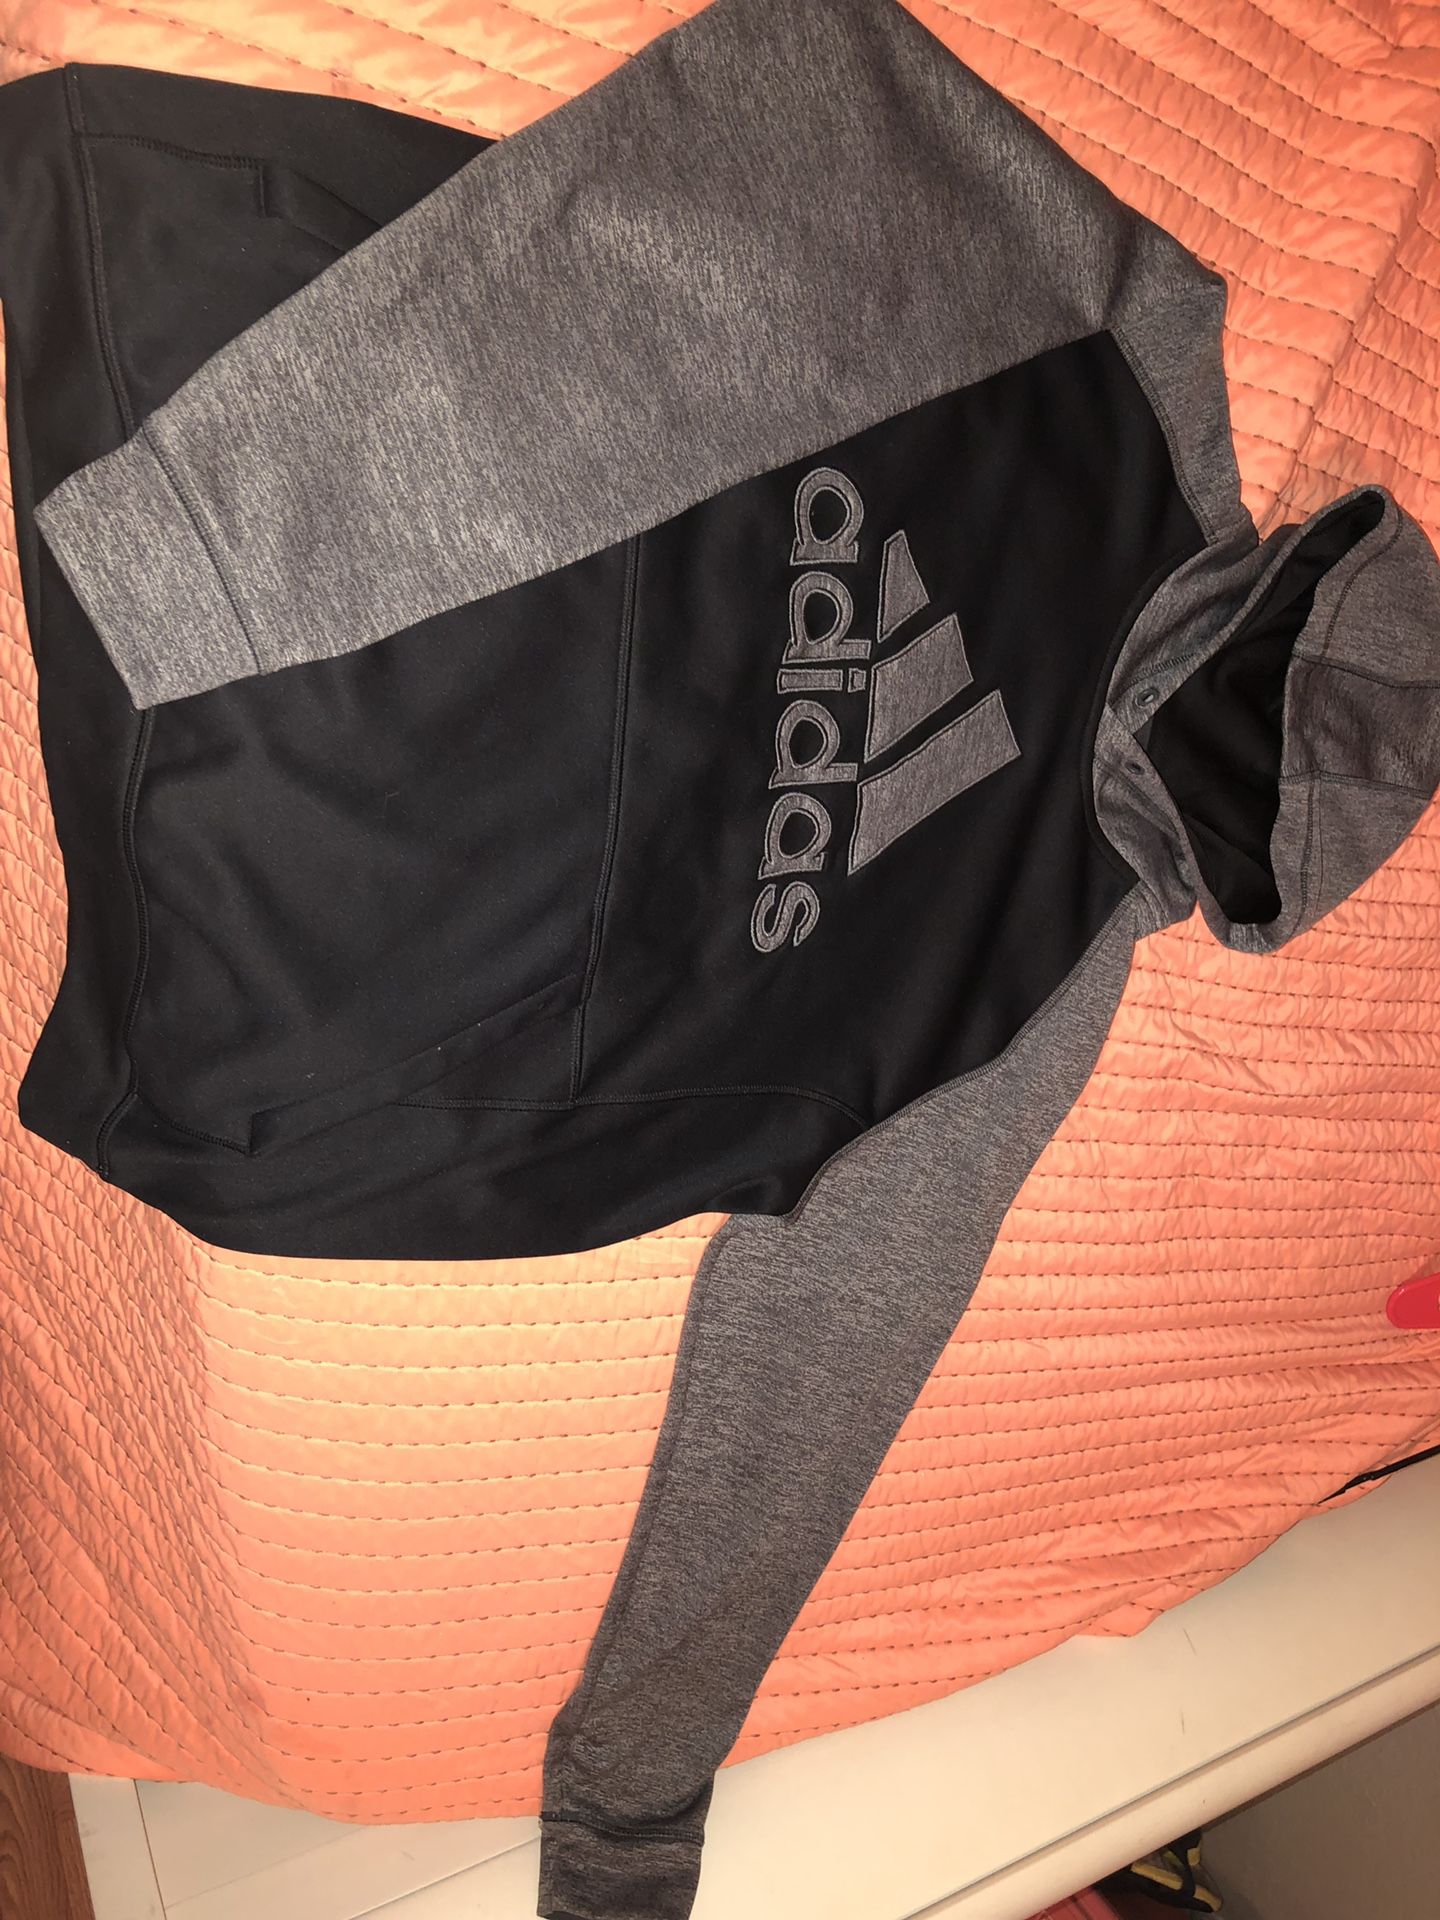 Adidas hoodie